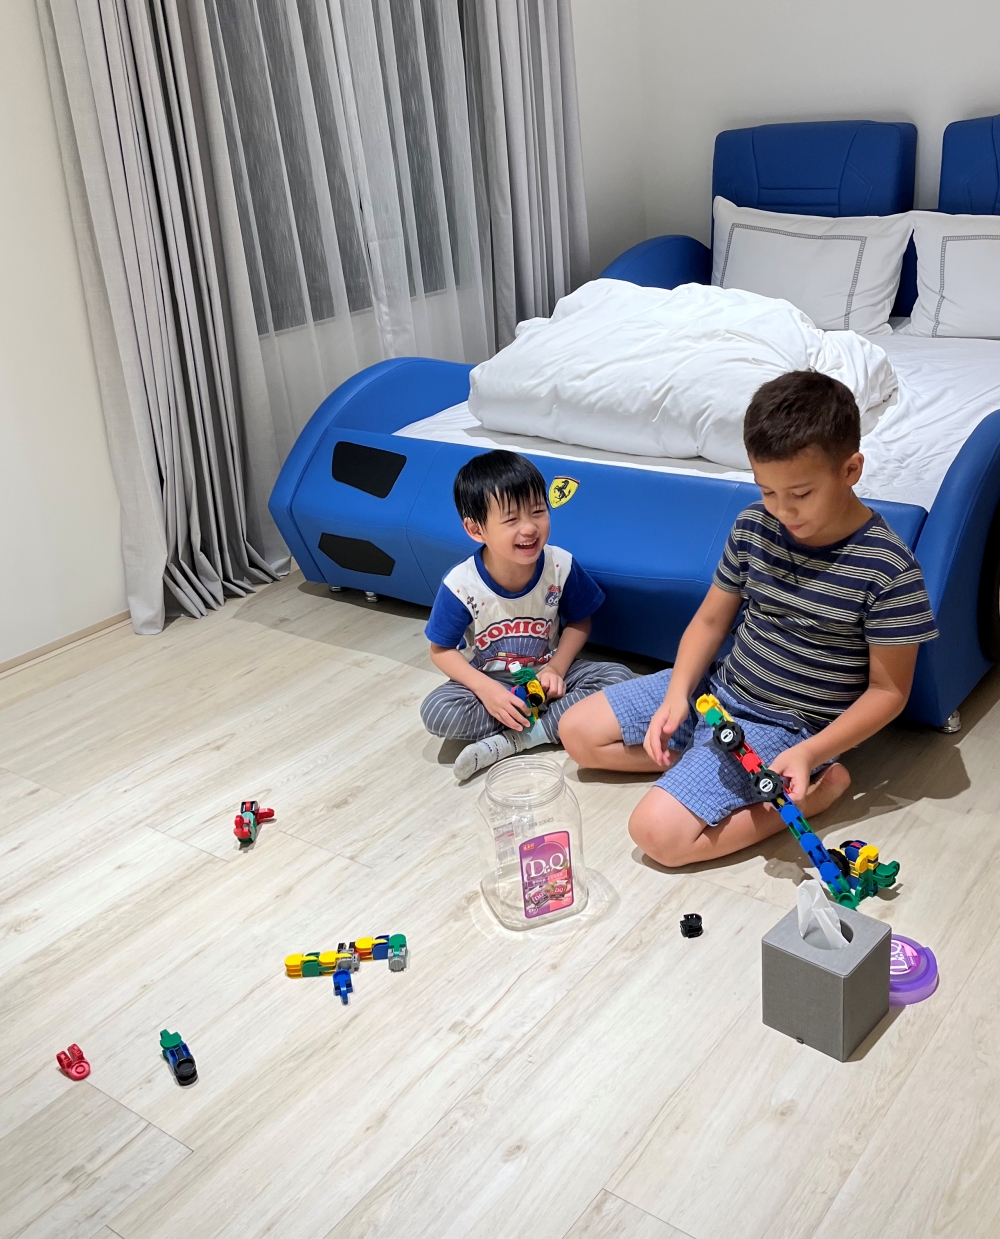 攜帶方便的韓國iRiNGO百變創意3D積木外出遊玩分享好神器